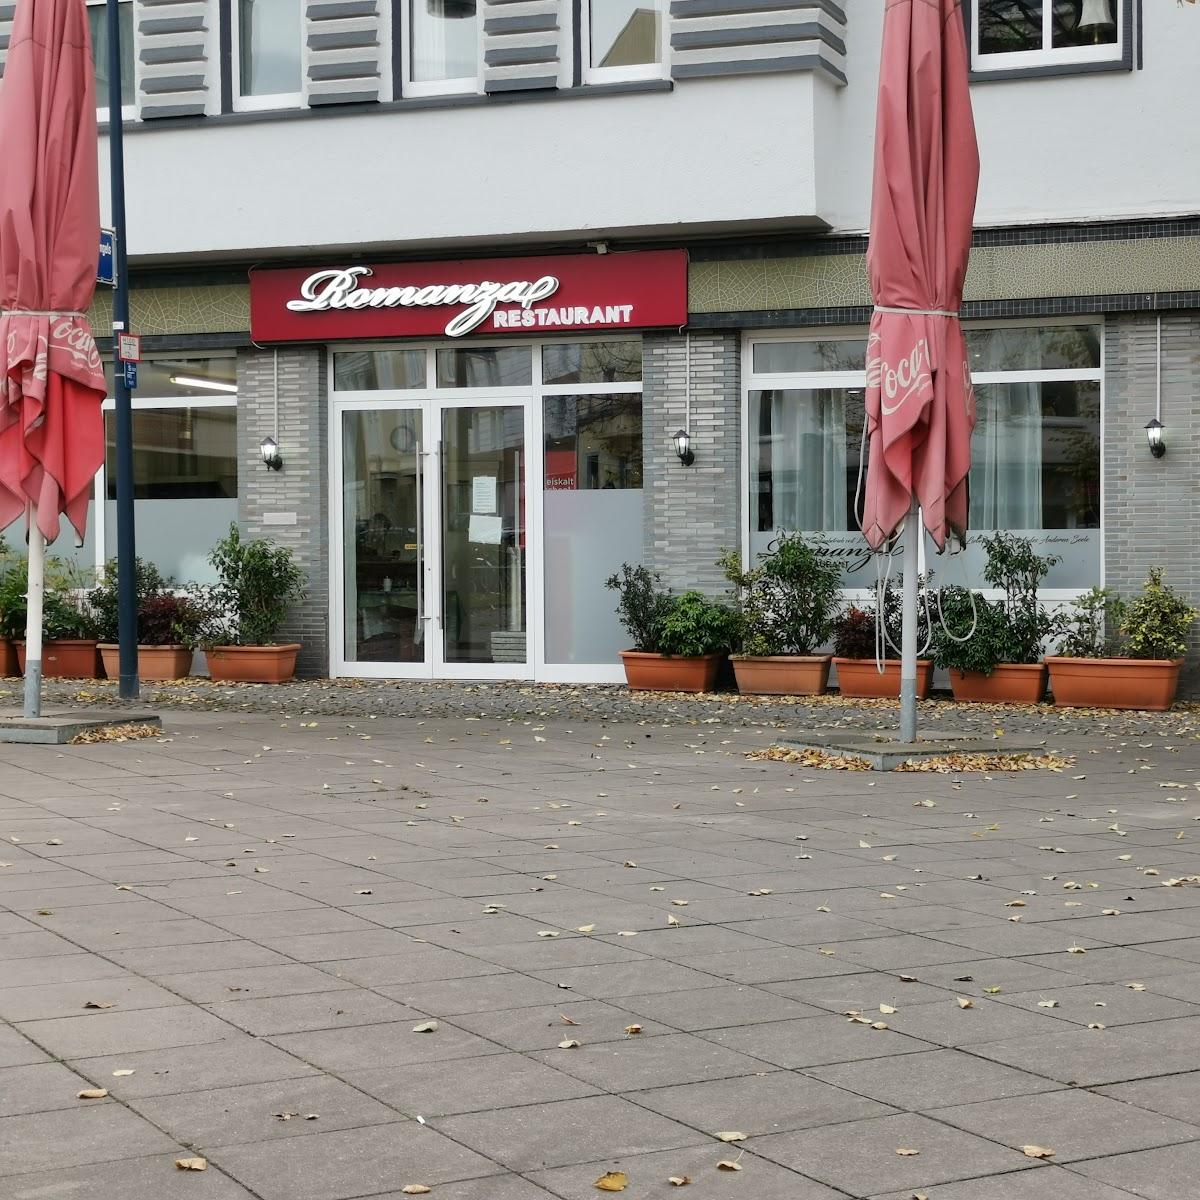 Restaurant "Romanza" in Dortmund